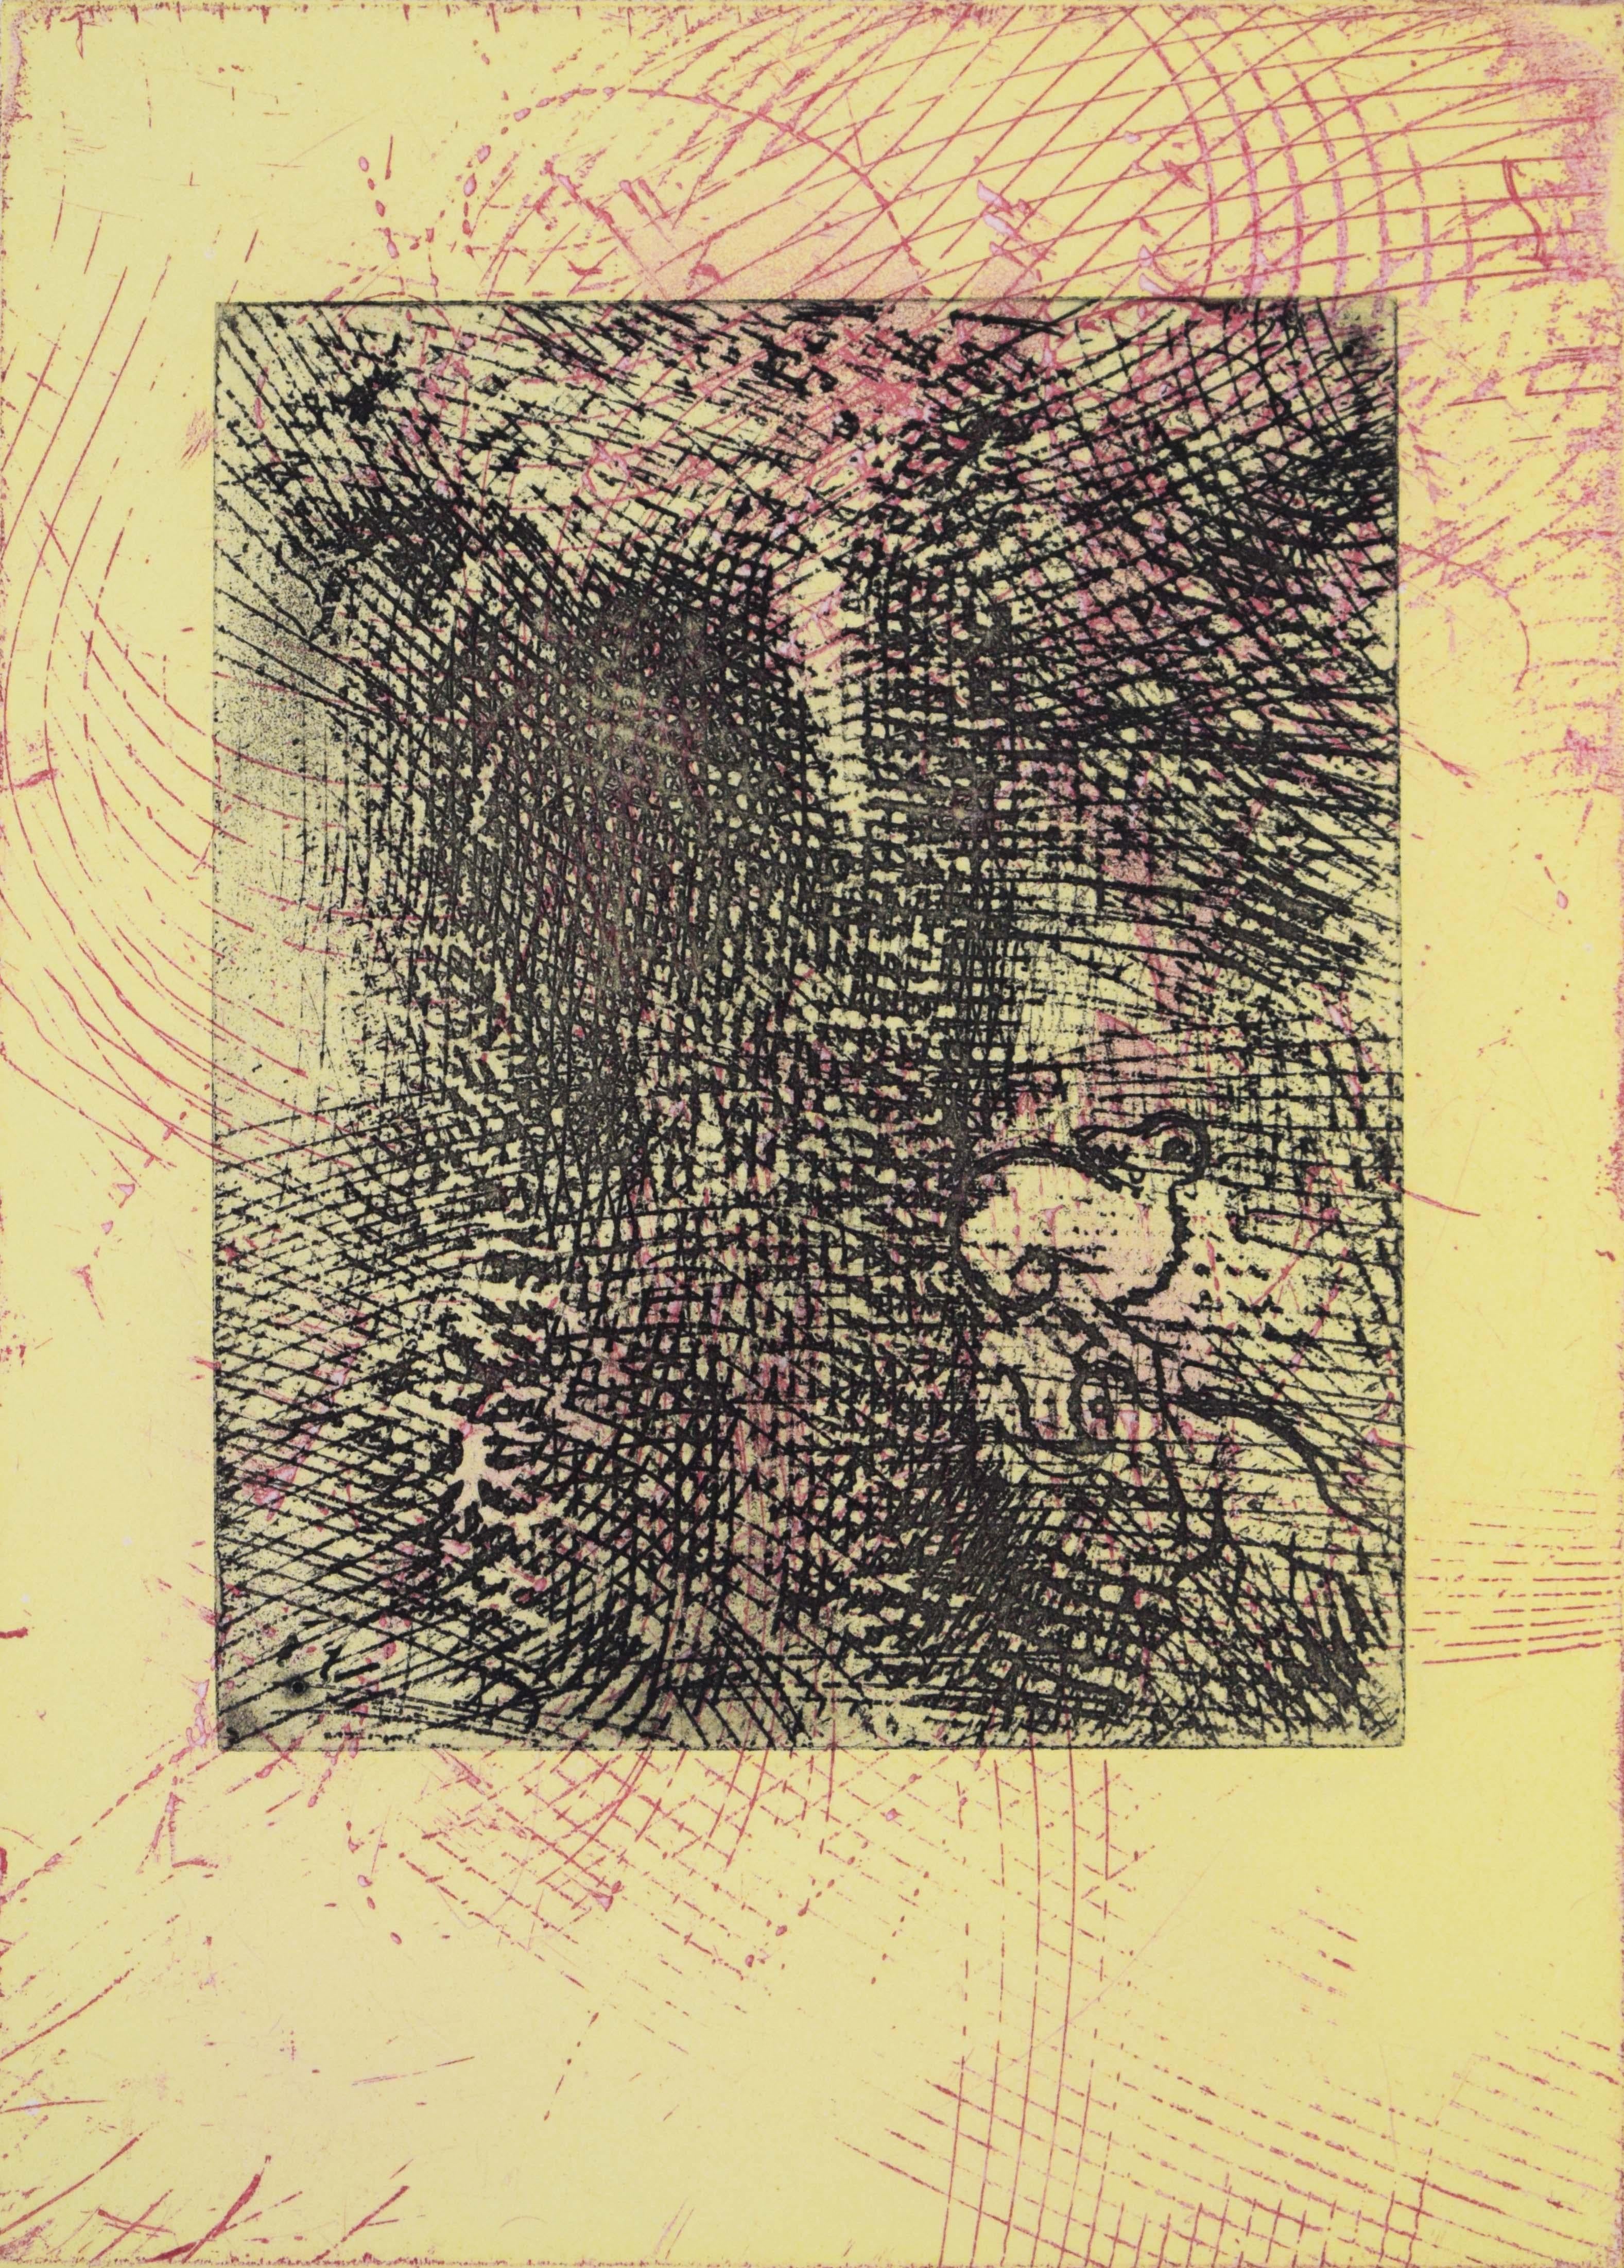 Print Max Ernst - Texts et lettres - gravure surréaliste allemande